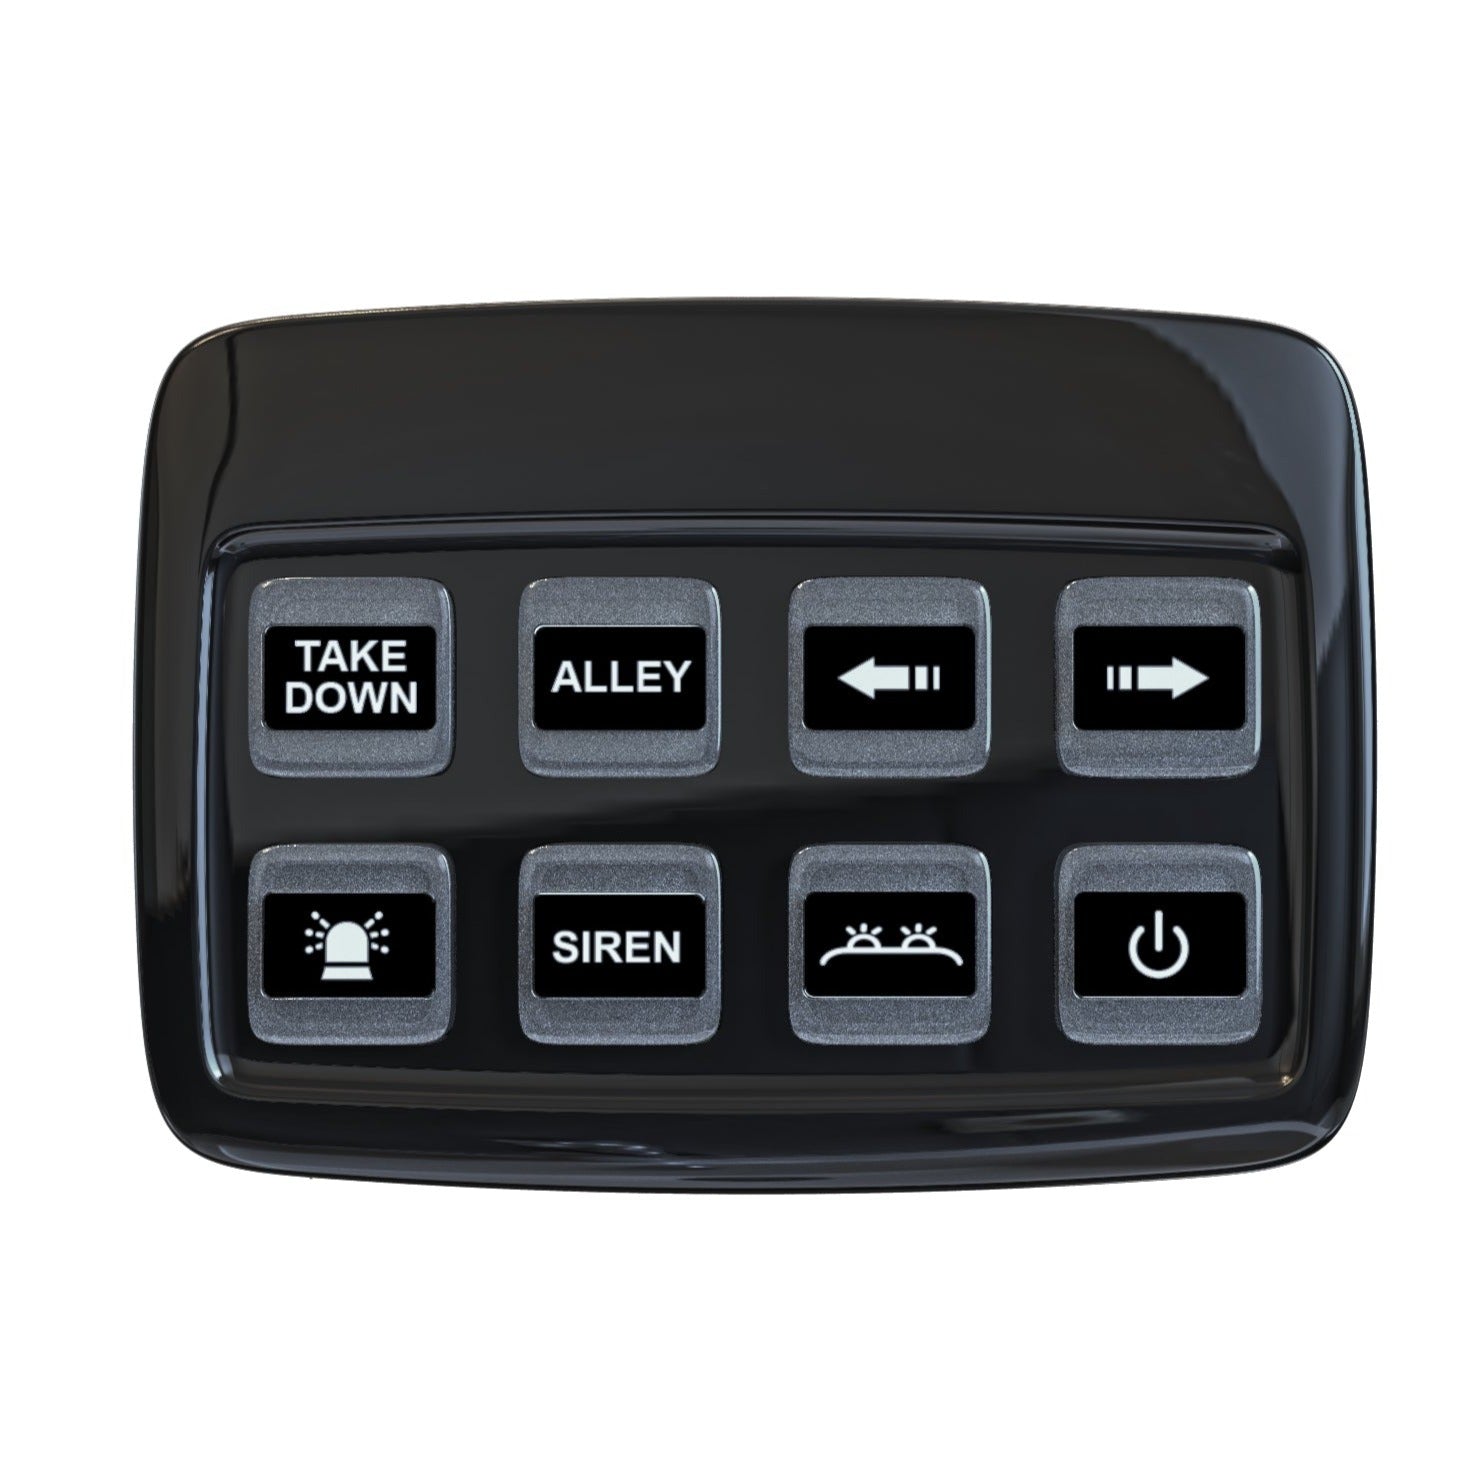 Panel de control de 8 botones y módulo de alimentación/montaje con perno - spo-cs-disabled - spo-default - spo-disabled - spo-notify-me-disab